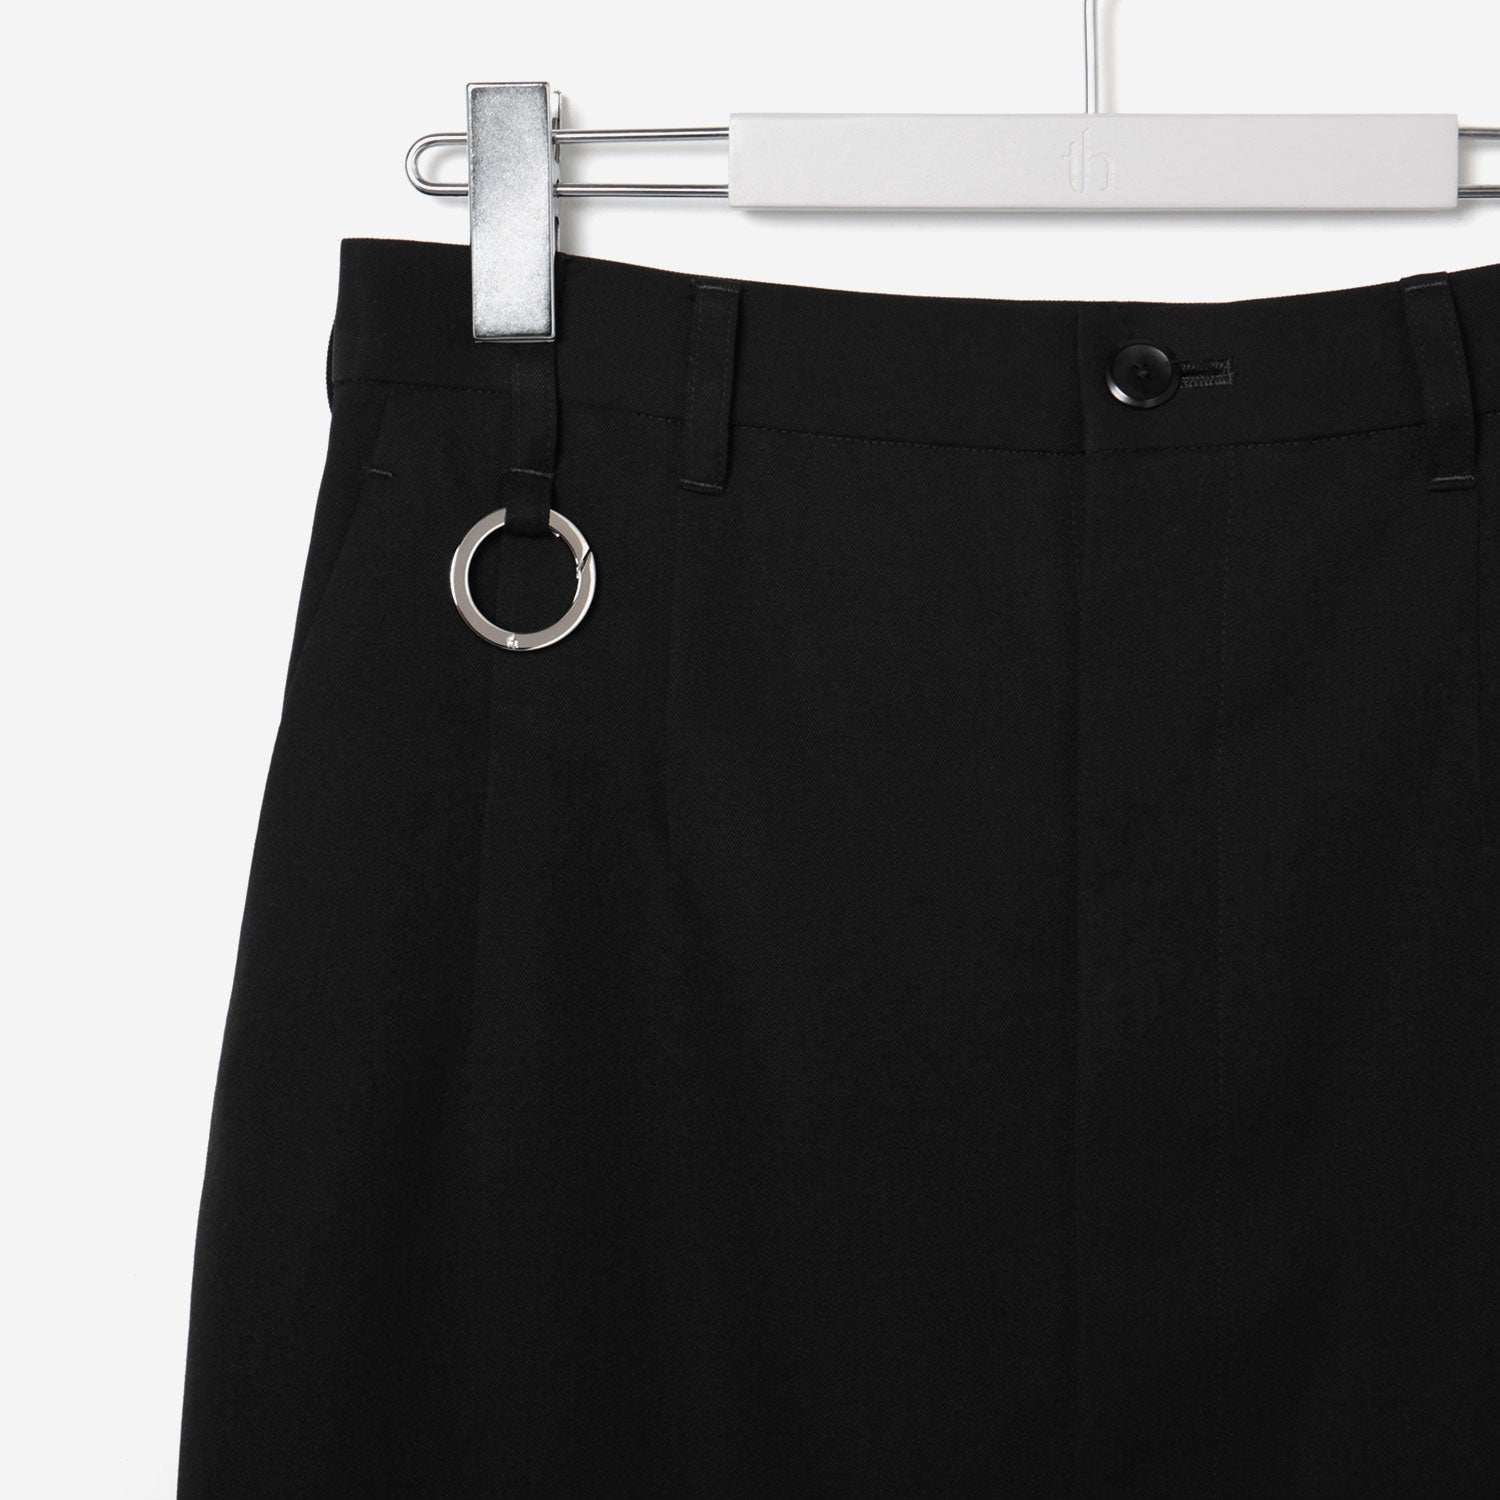 Long Open Skirt / black